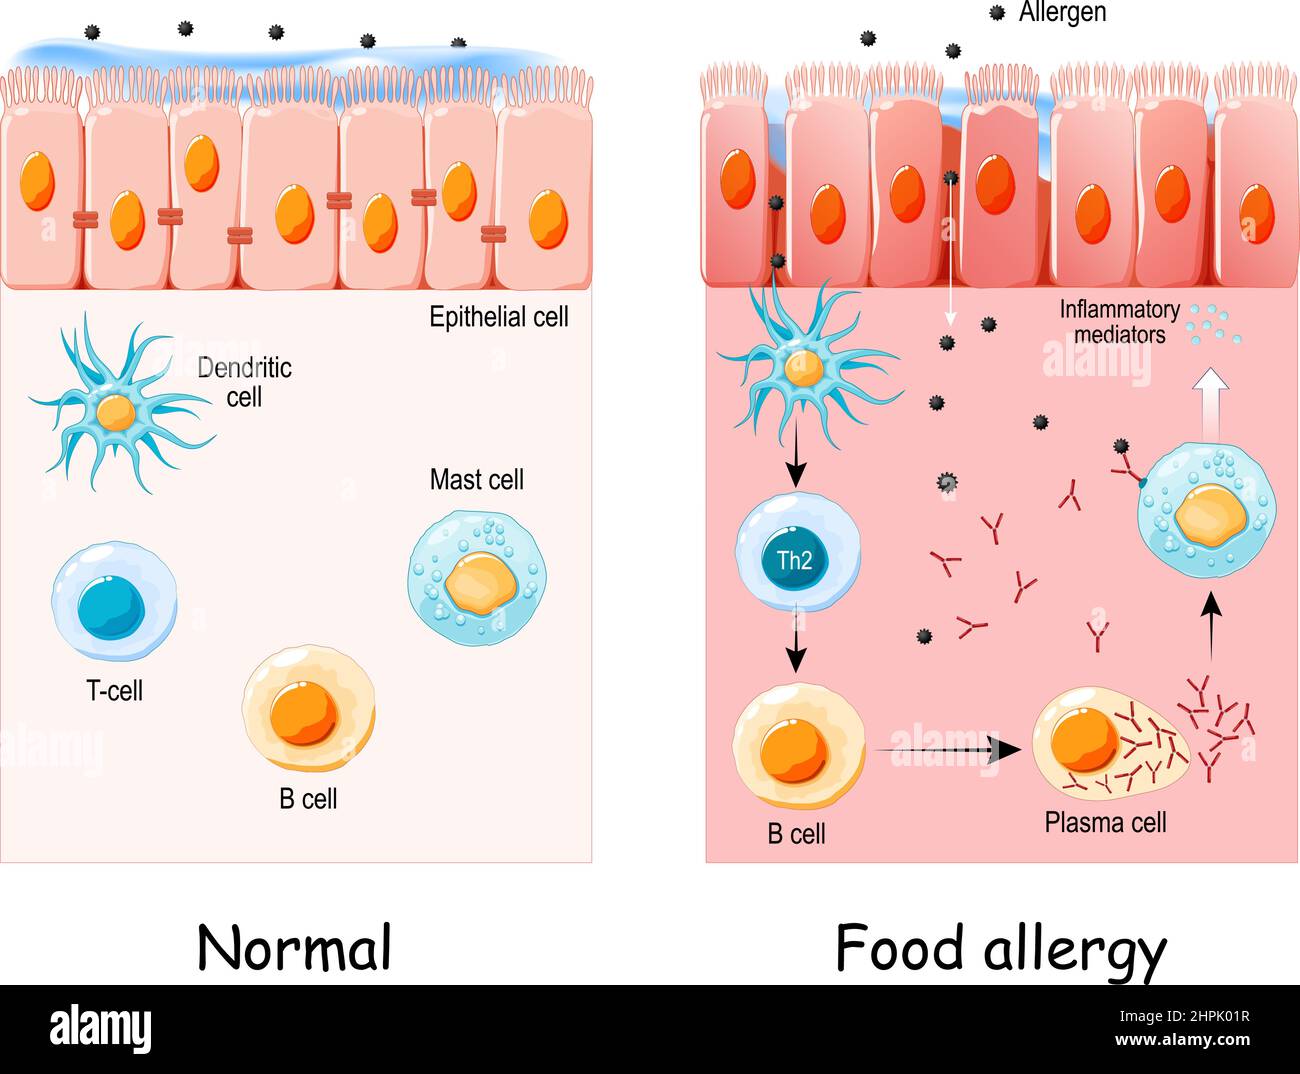 l'allergie alimentaire est une réponse immunitaire anormale aux aliments. Cellule de l'épithélium normal et allergie alimentaire. Développement d'une réaction allergique à partir d'allergènes Illustration de Vecteur